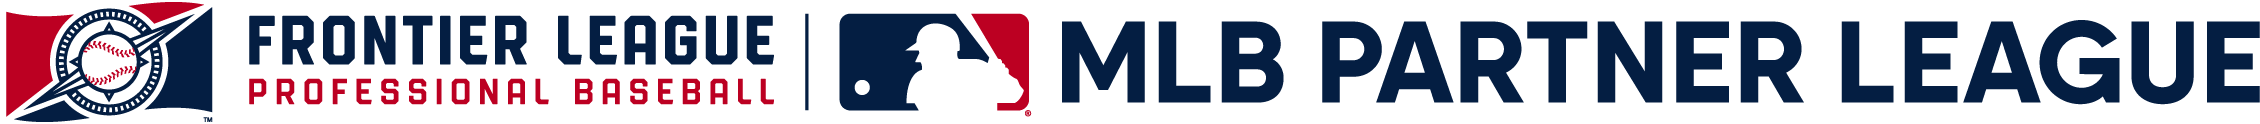 MILB Frontier League Partner League